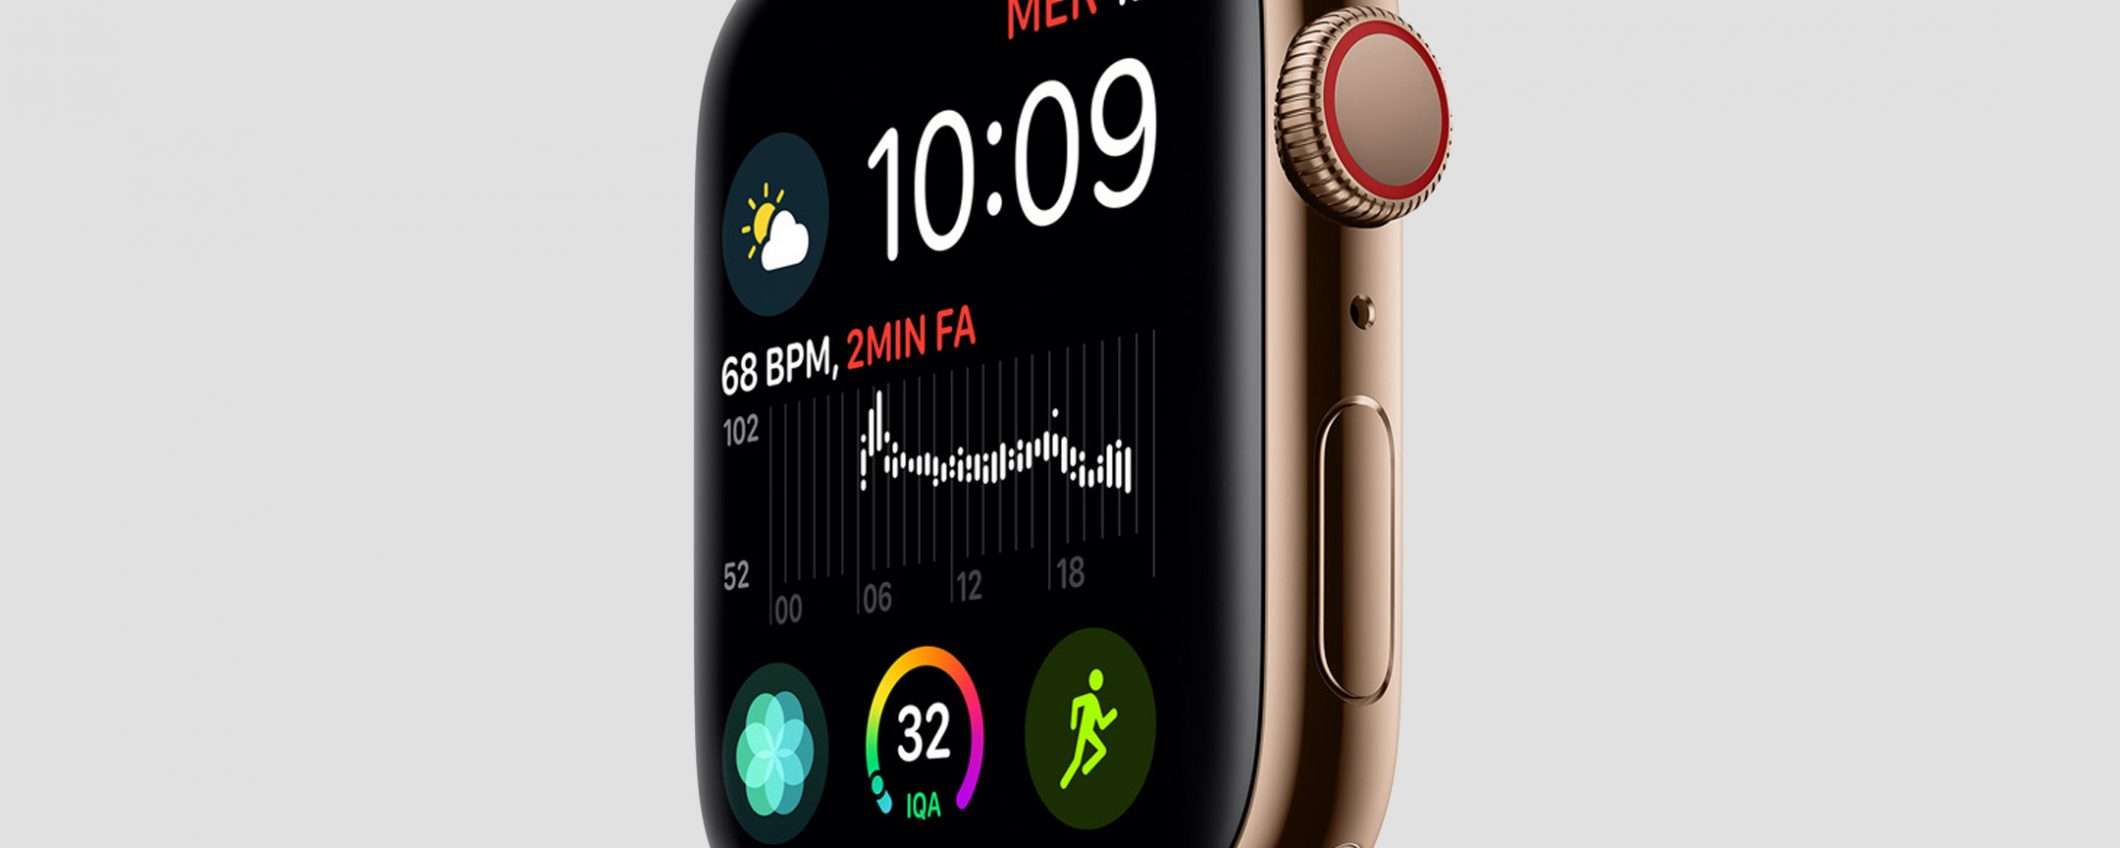 Apple ripara watchOS: in download la versione 5.1.1